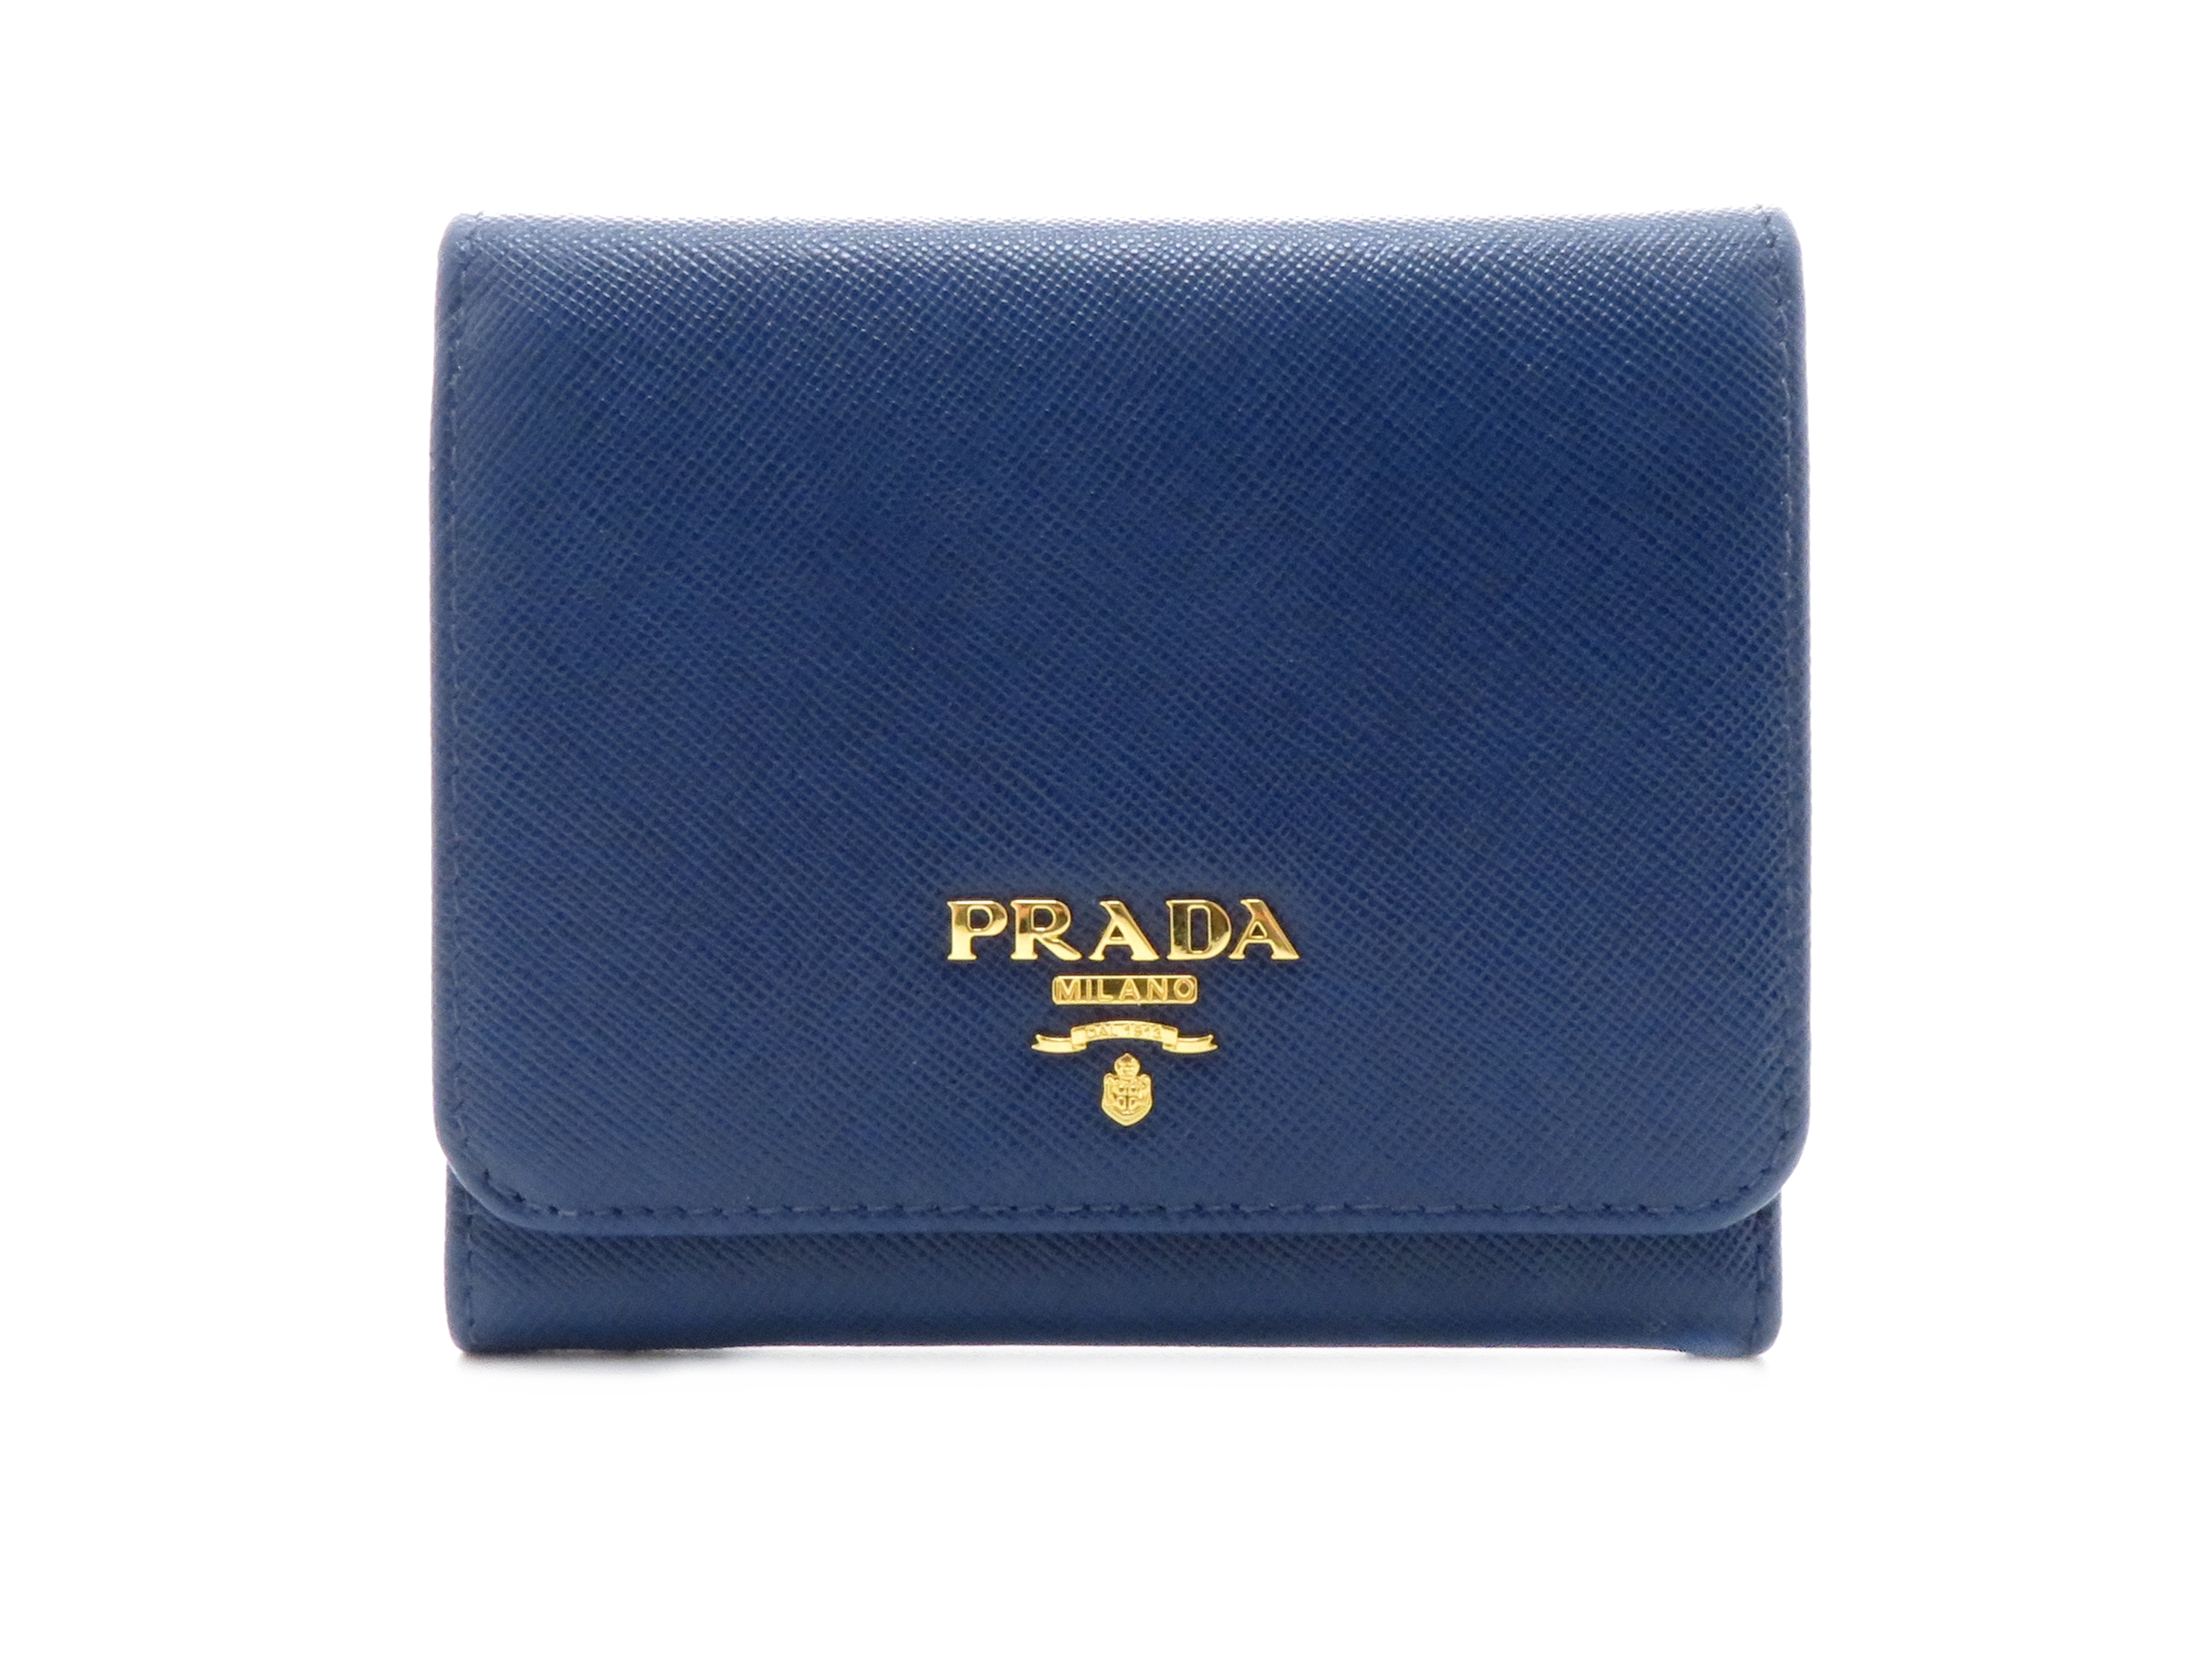 PRADA プラダ サフィアーノ ブルー 三つ折財布 アウトレット品 1M0176